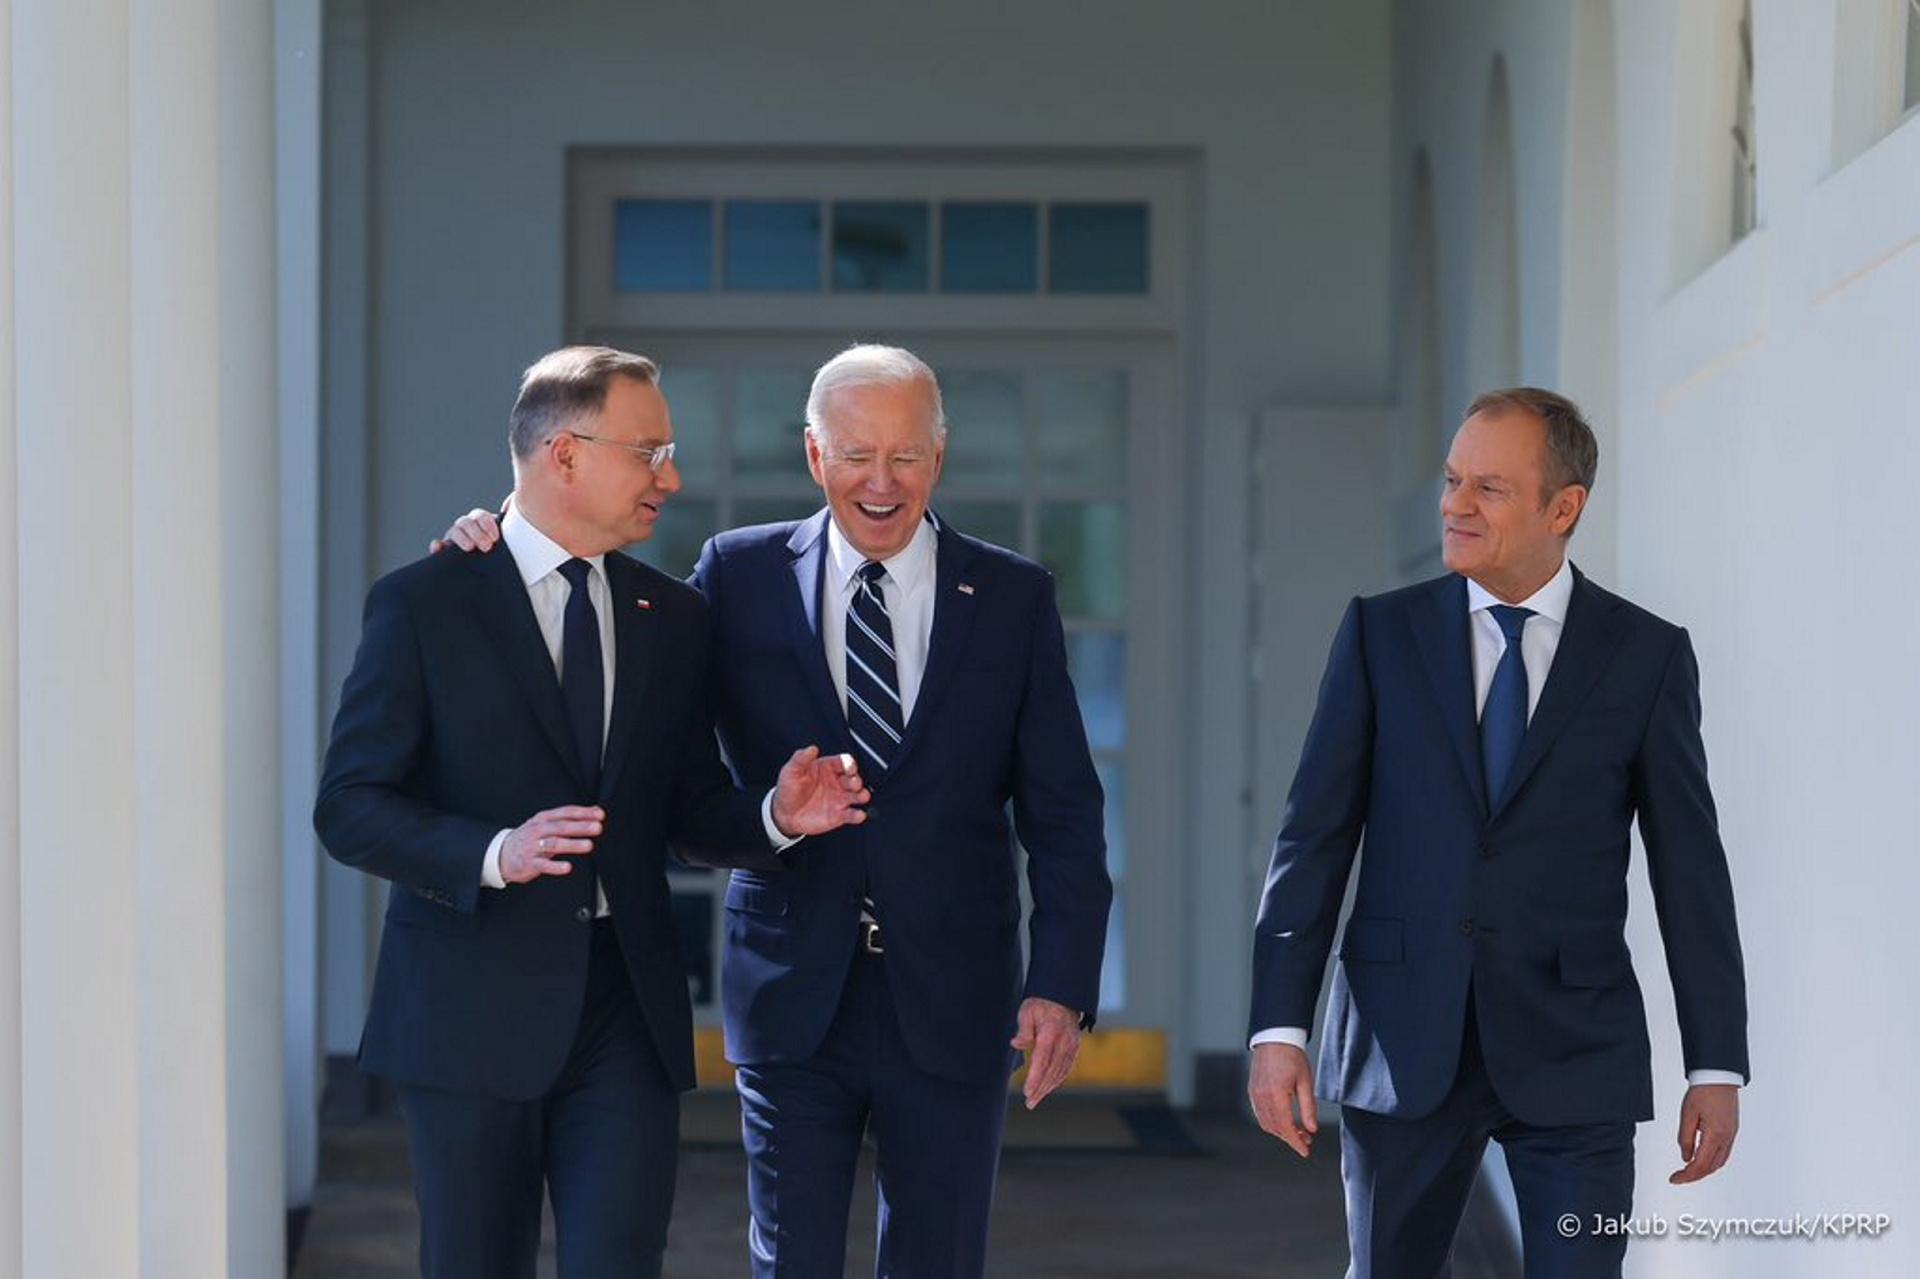 Tusk convoque une réunion d’urgence avec le président français et le chancelier allemand – Super Express